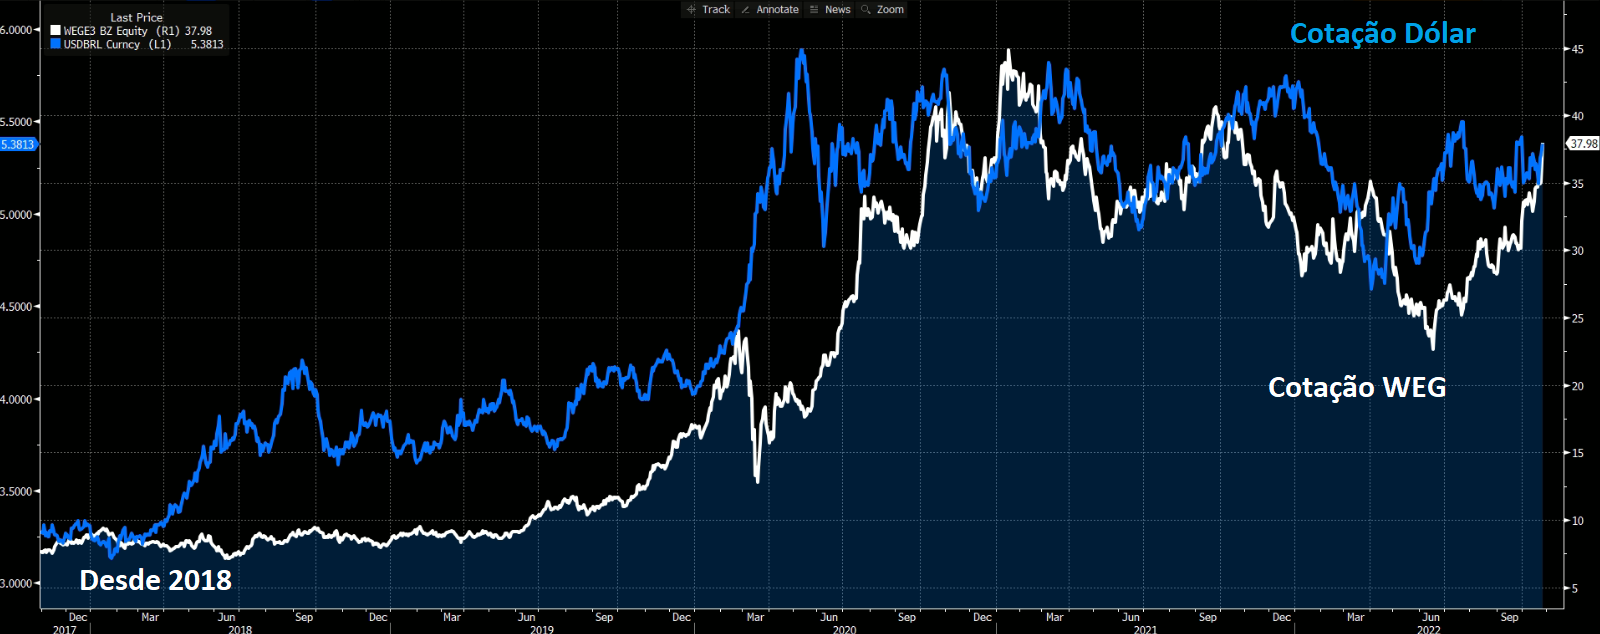 Gráfico apresenta Preço Weg (branco) e Preço Dólar (azul). 